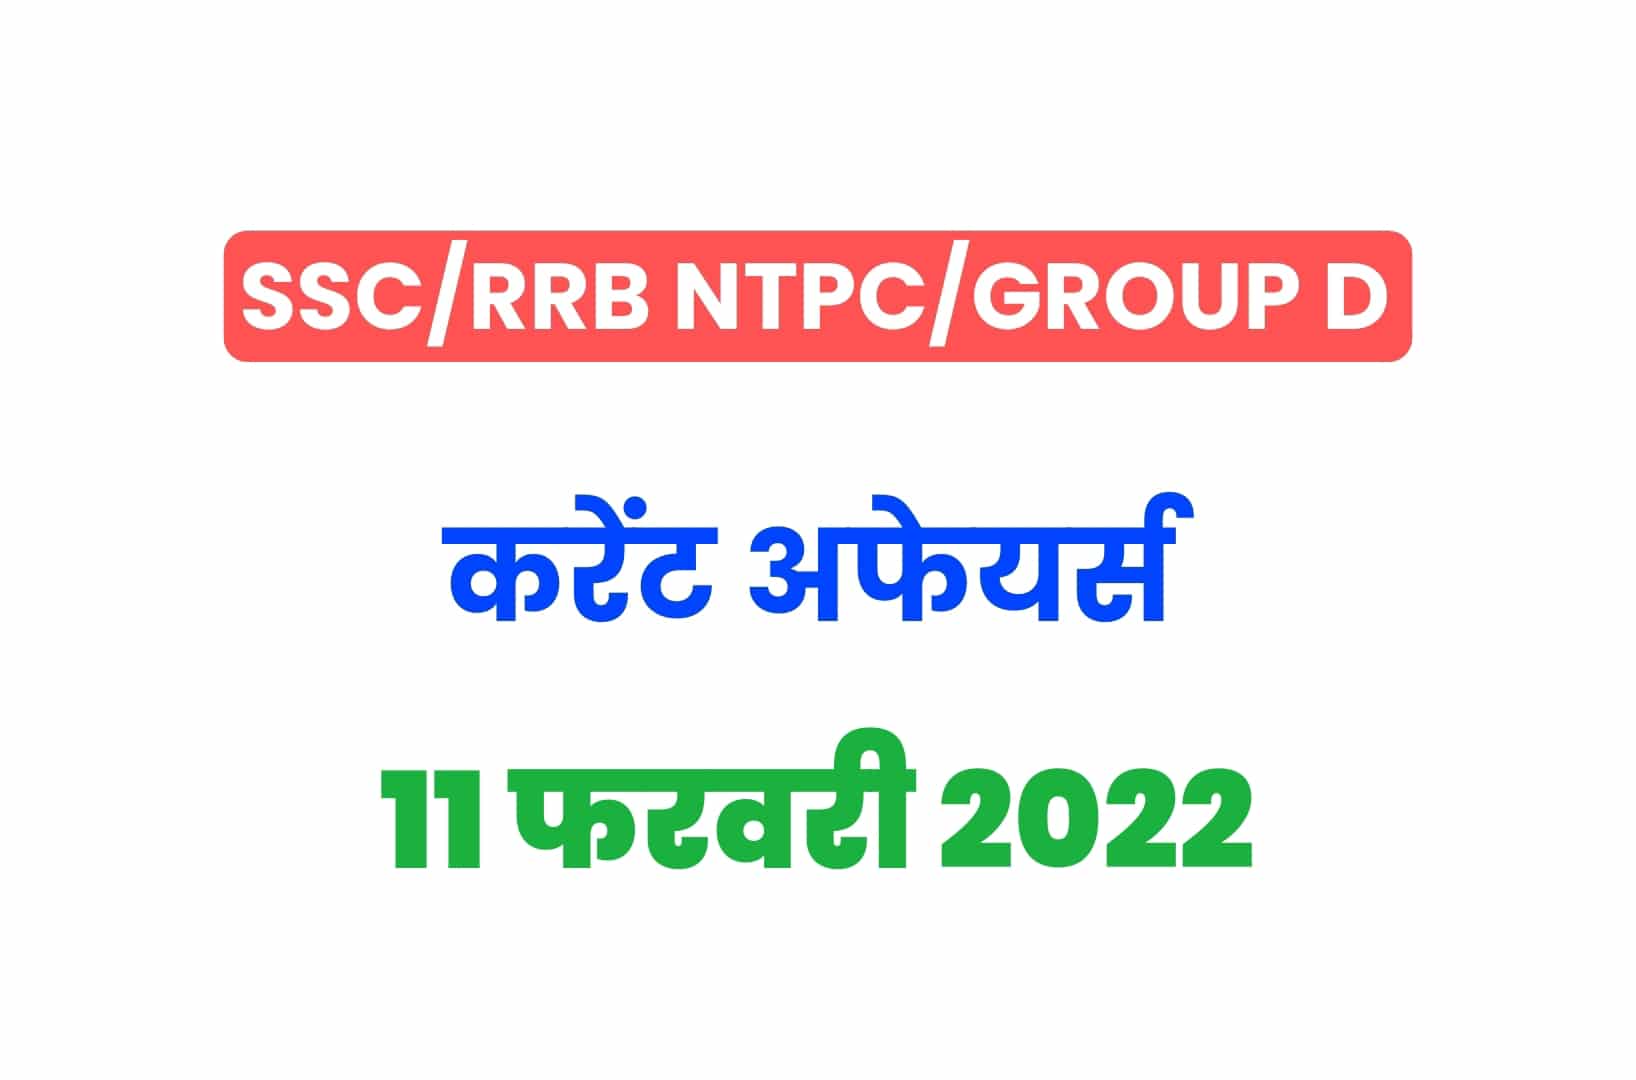 SSC/RRB Group D/NTPC Exam 2022: 11 फरवरी के 15 महत्वपूर्ण करेंट अफेयर्स के प्रश्न, जरूर पढ़ें